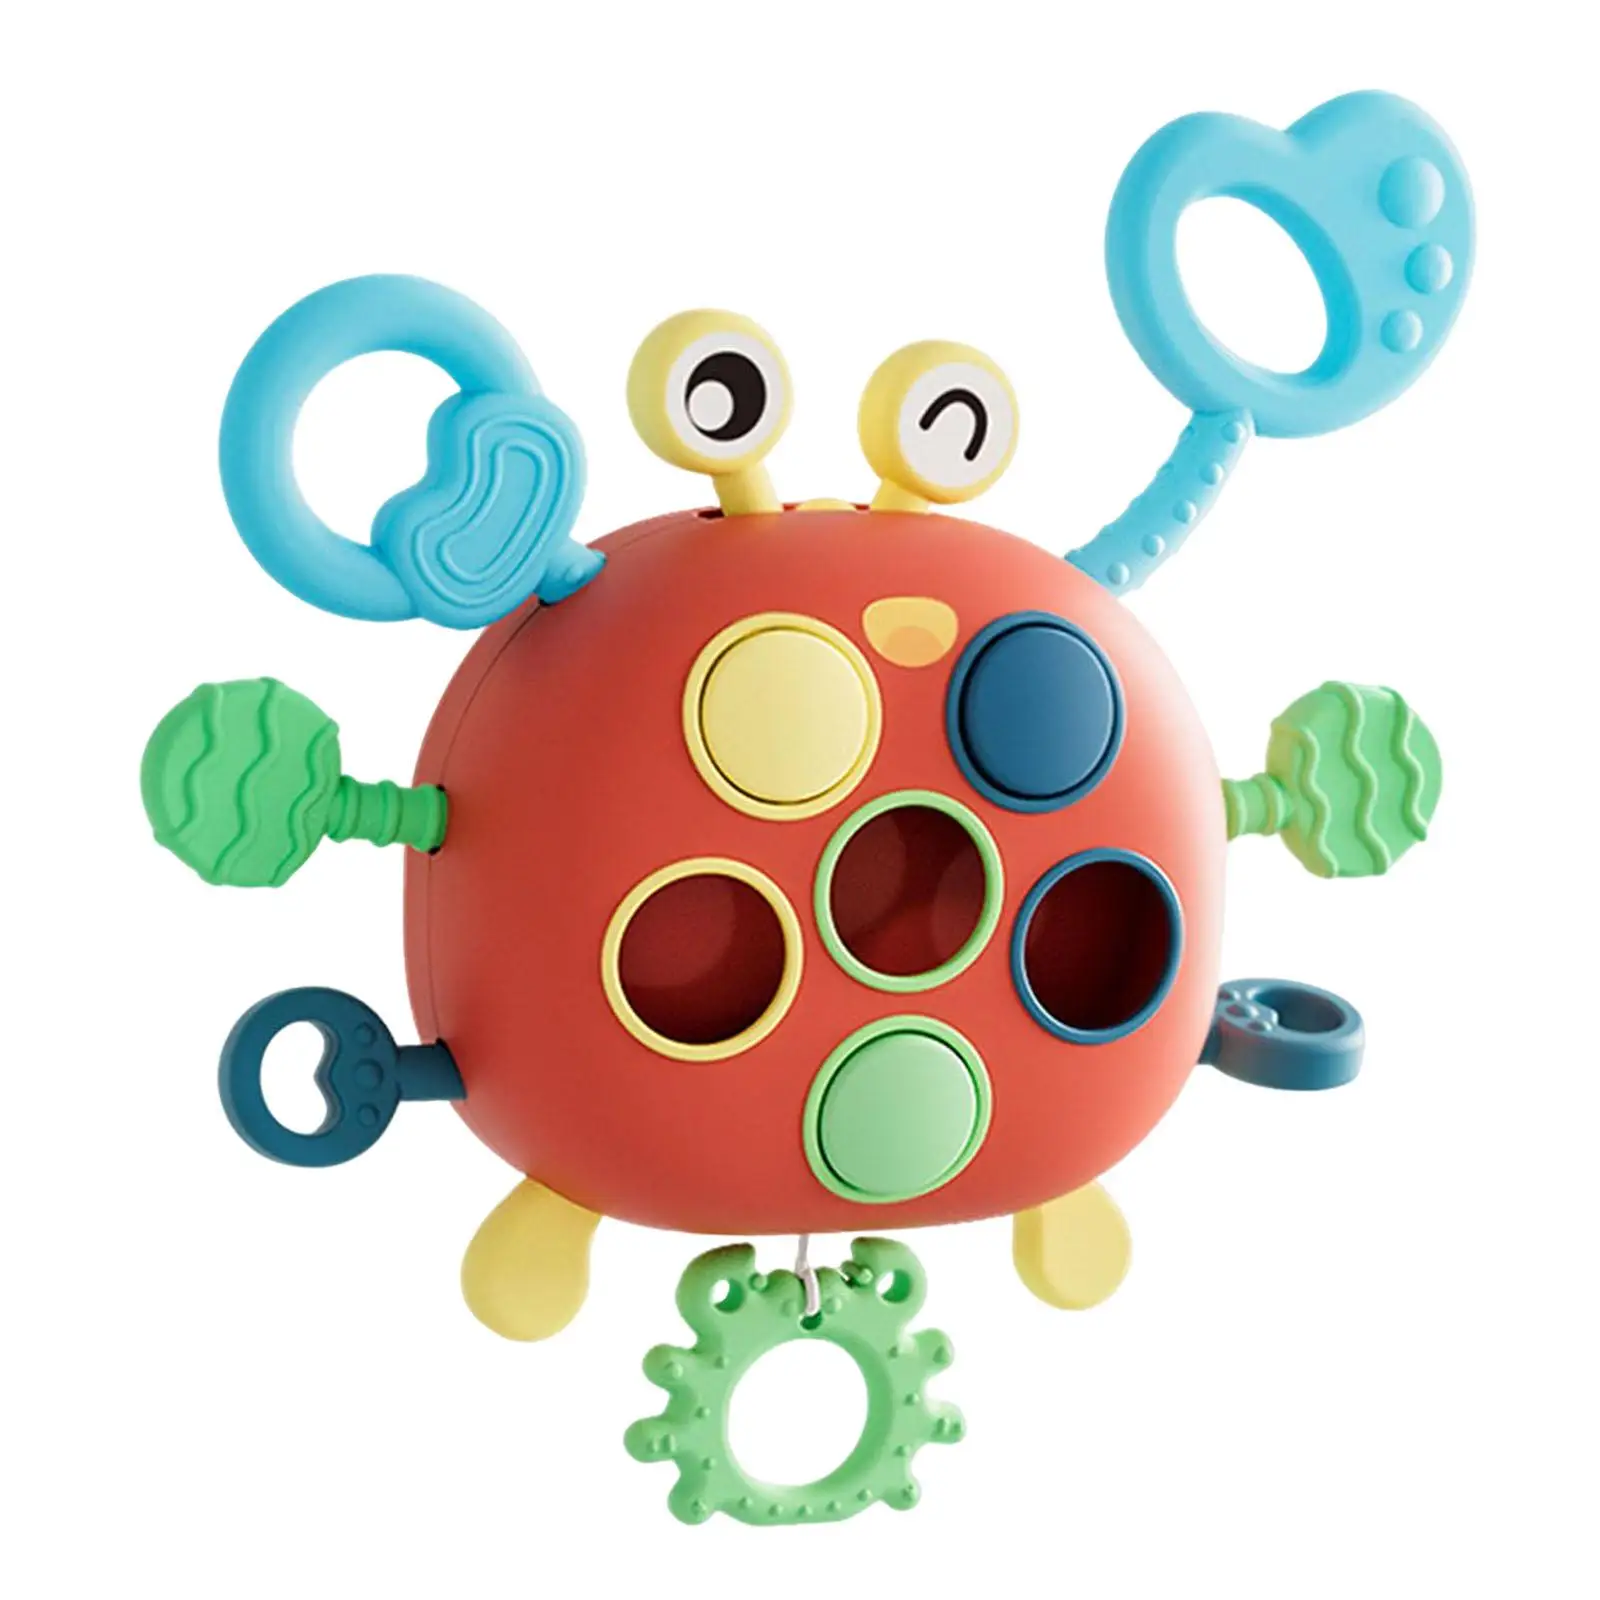 

Игрушка для развития мелкой моторики Монтессори, развивающая игрушка для малышей, дошкольников, девочек